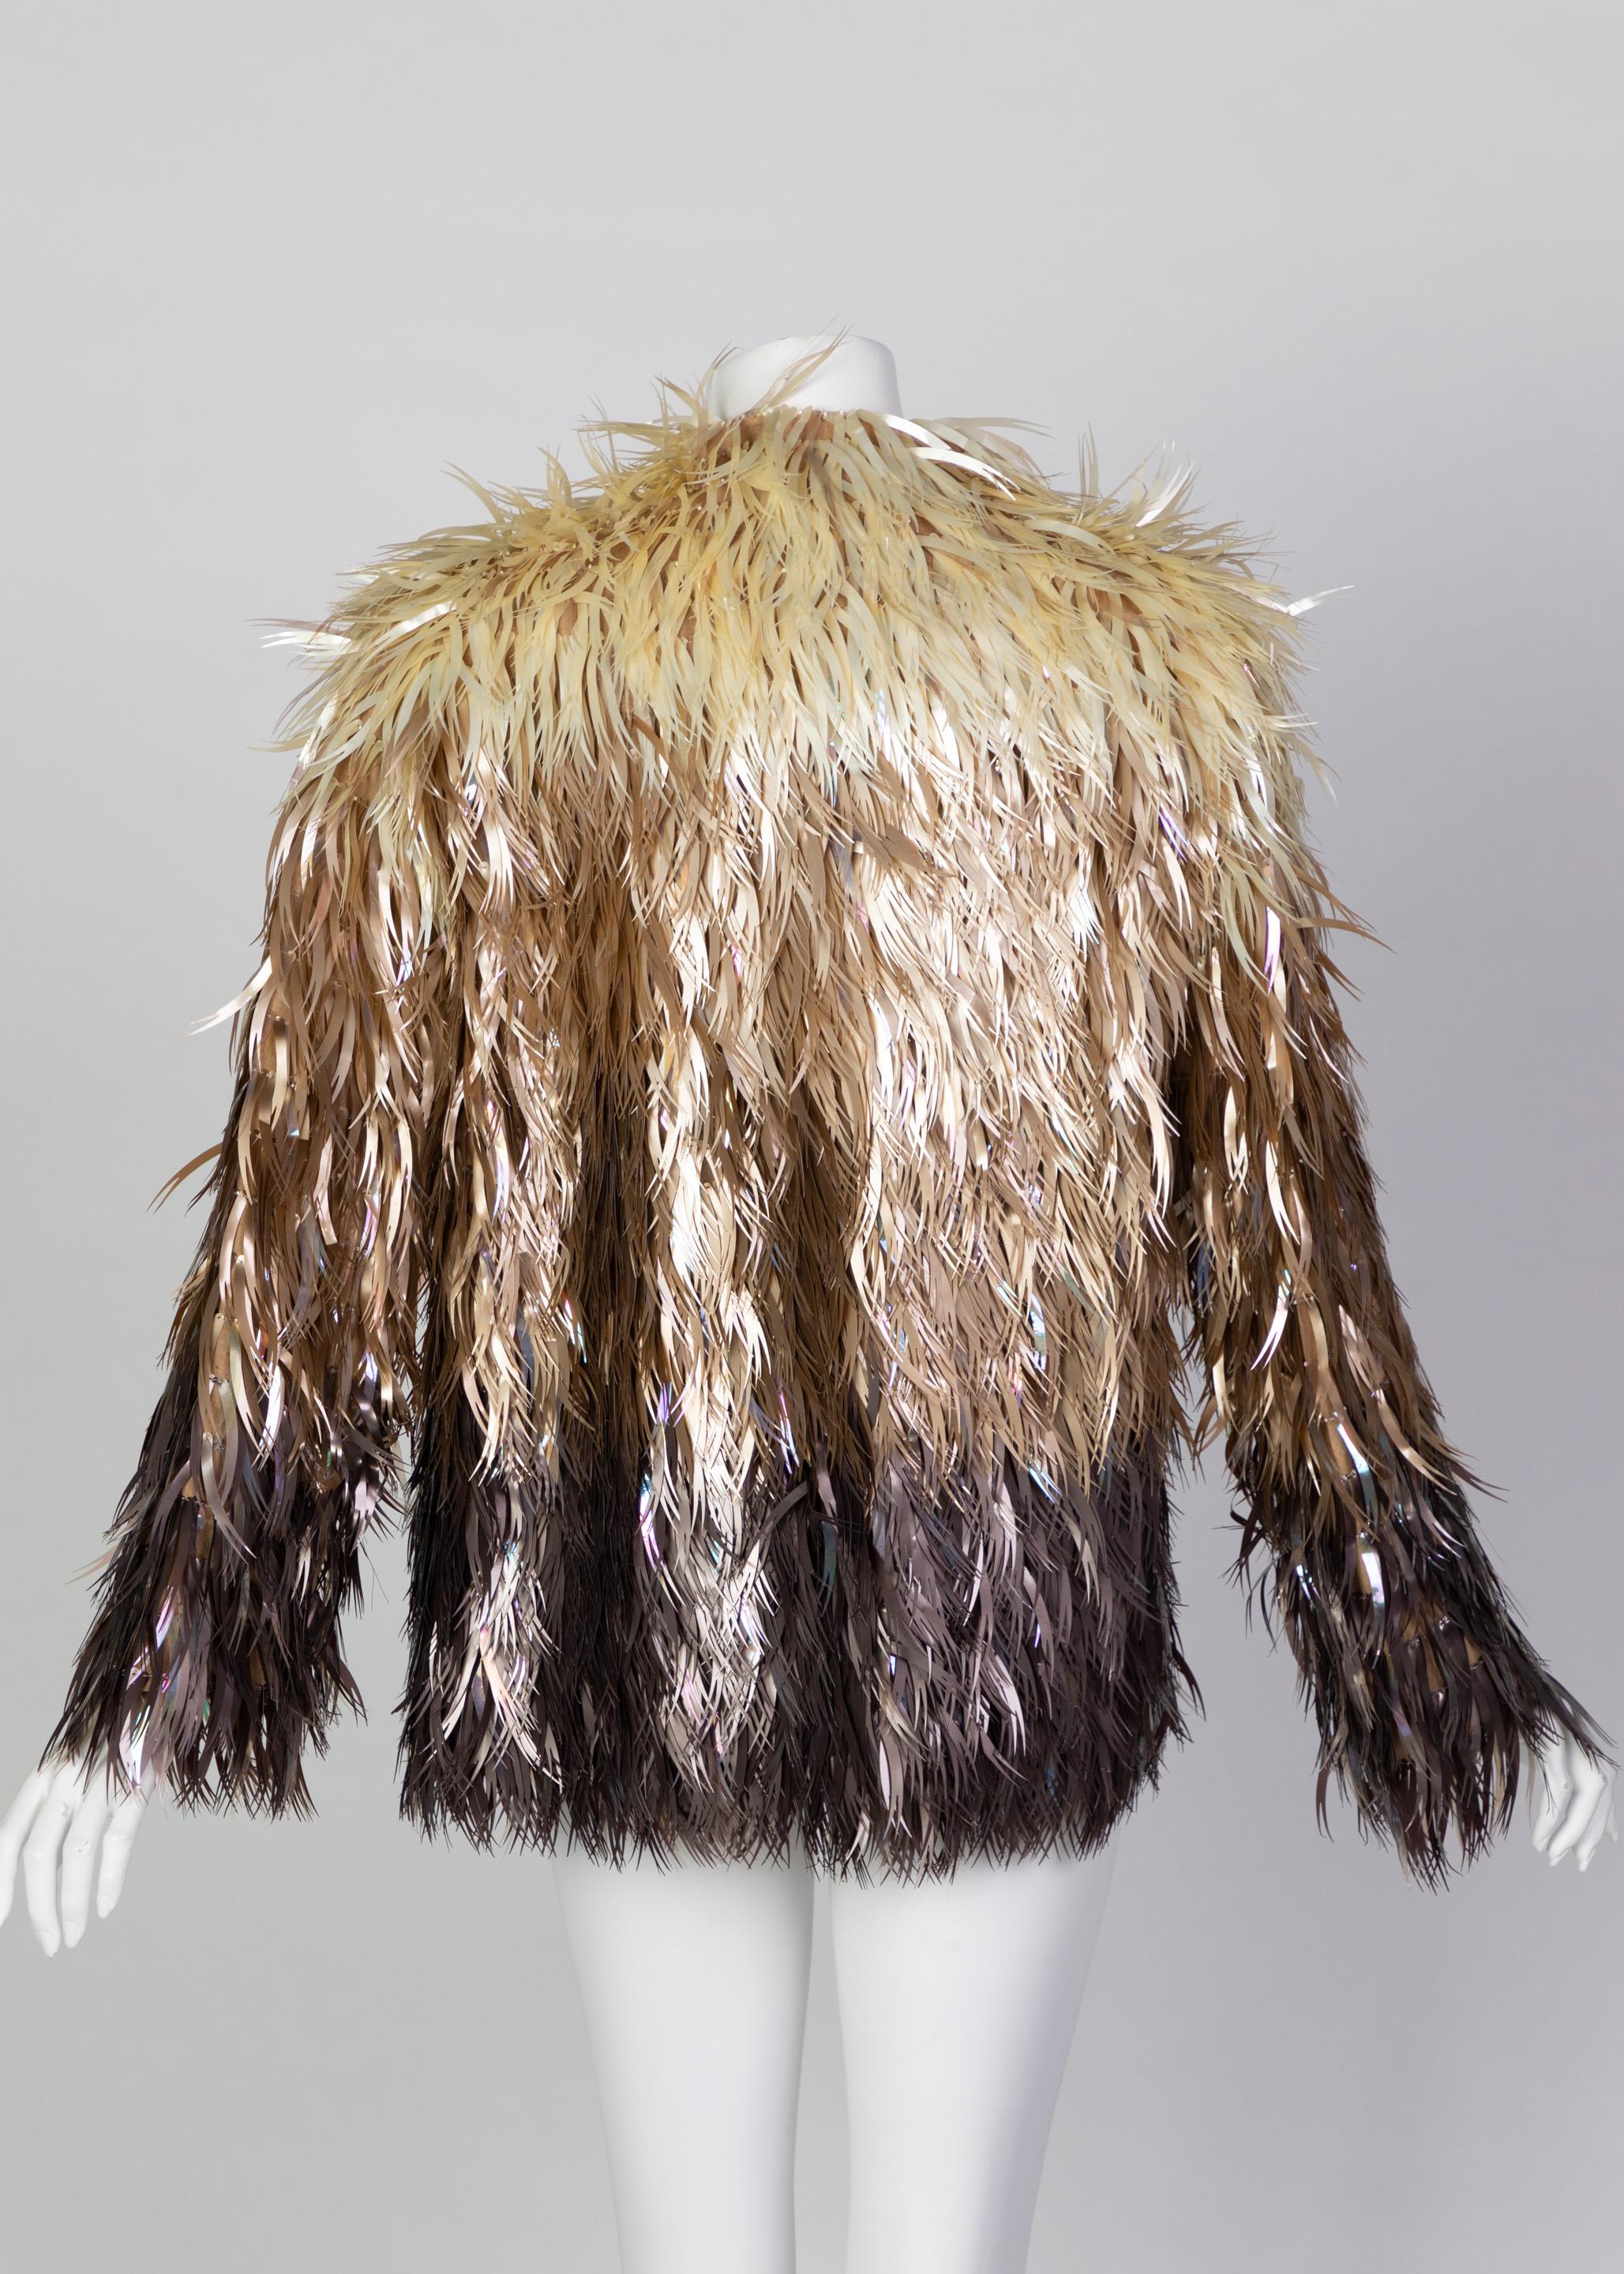 Chloé Stella McCartney - Manteau en plumes végétales, plastique et métal, défilé A/H 2000 en vente 2